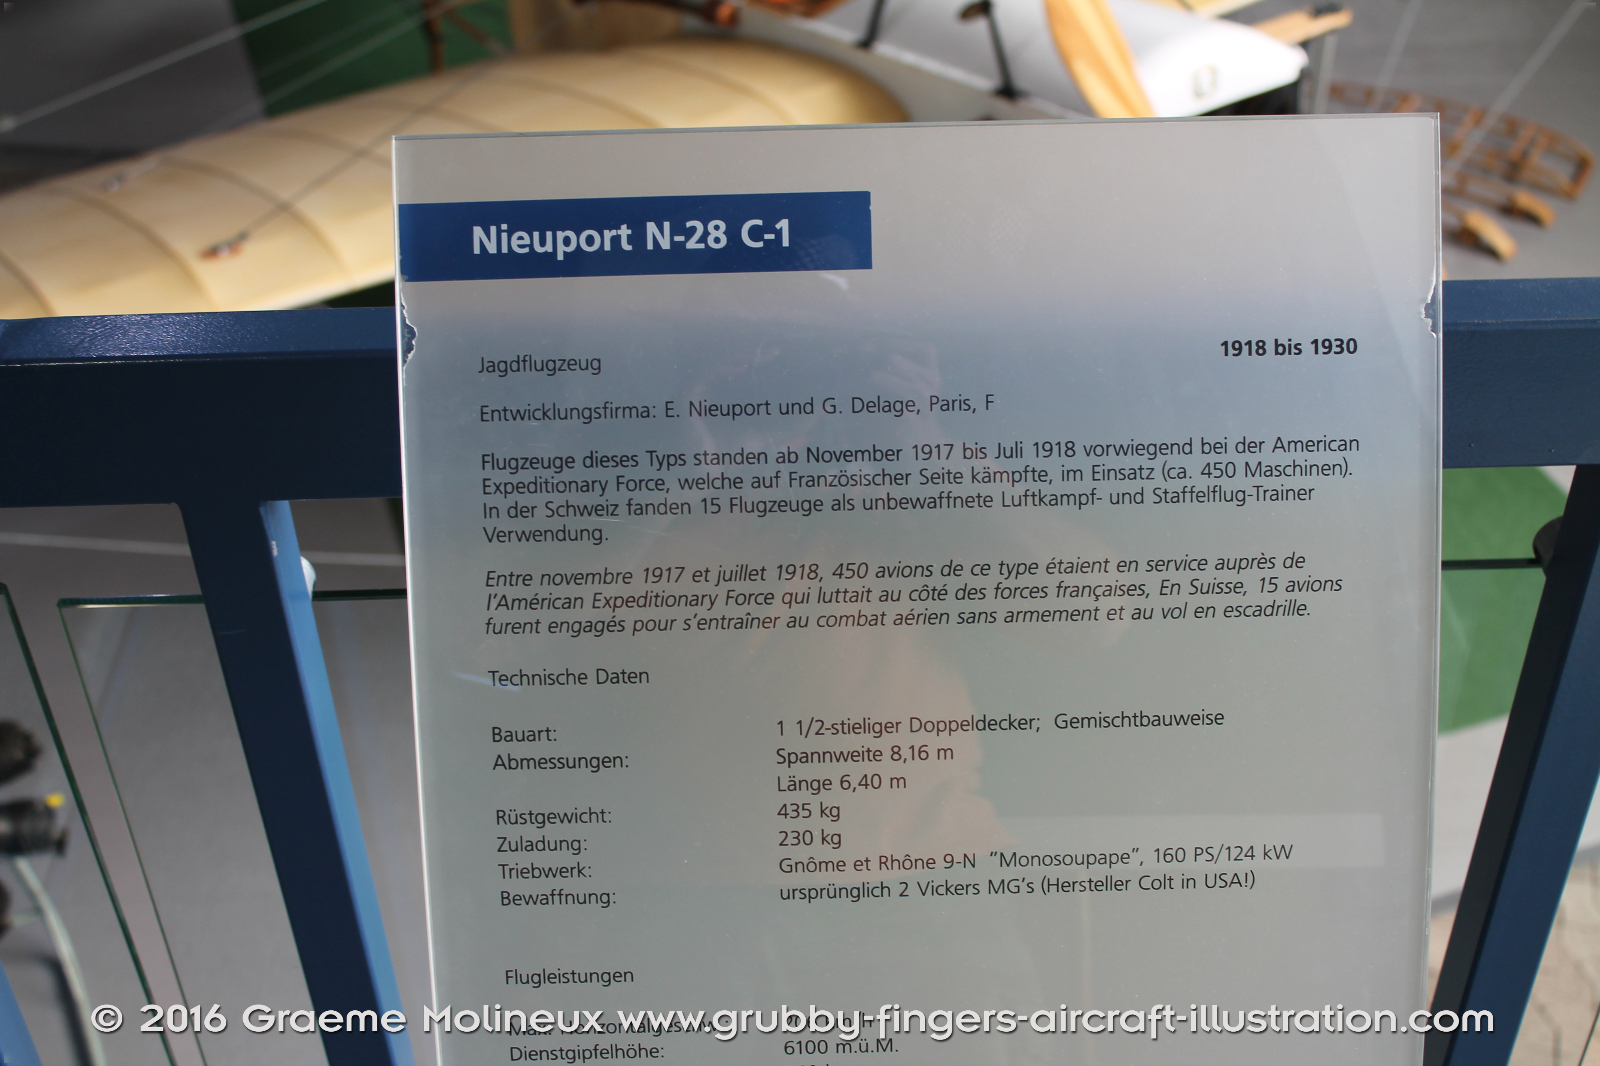 NIEUPORT_N-28_Swiss_Air_Force_Museum_2015_03_GrubbyFingers